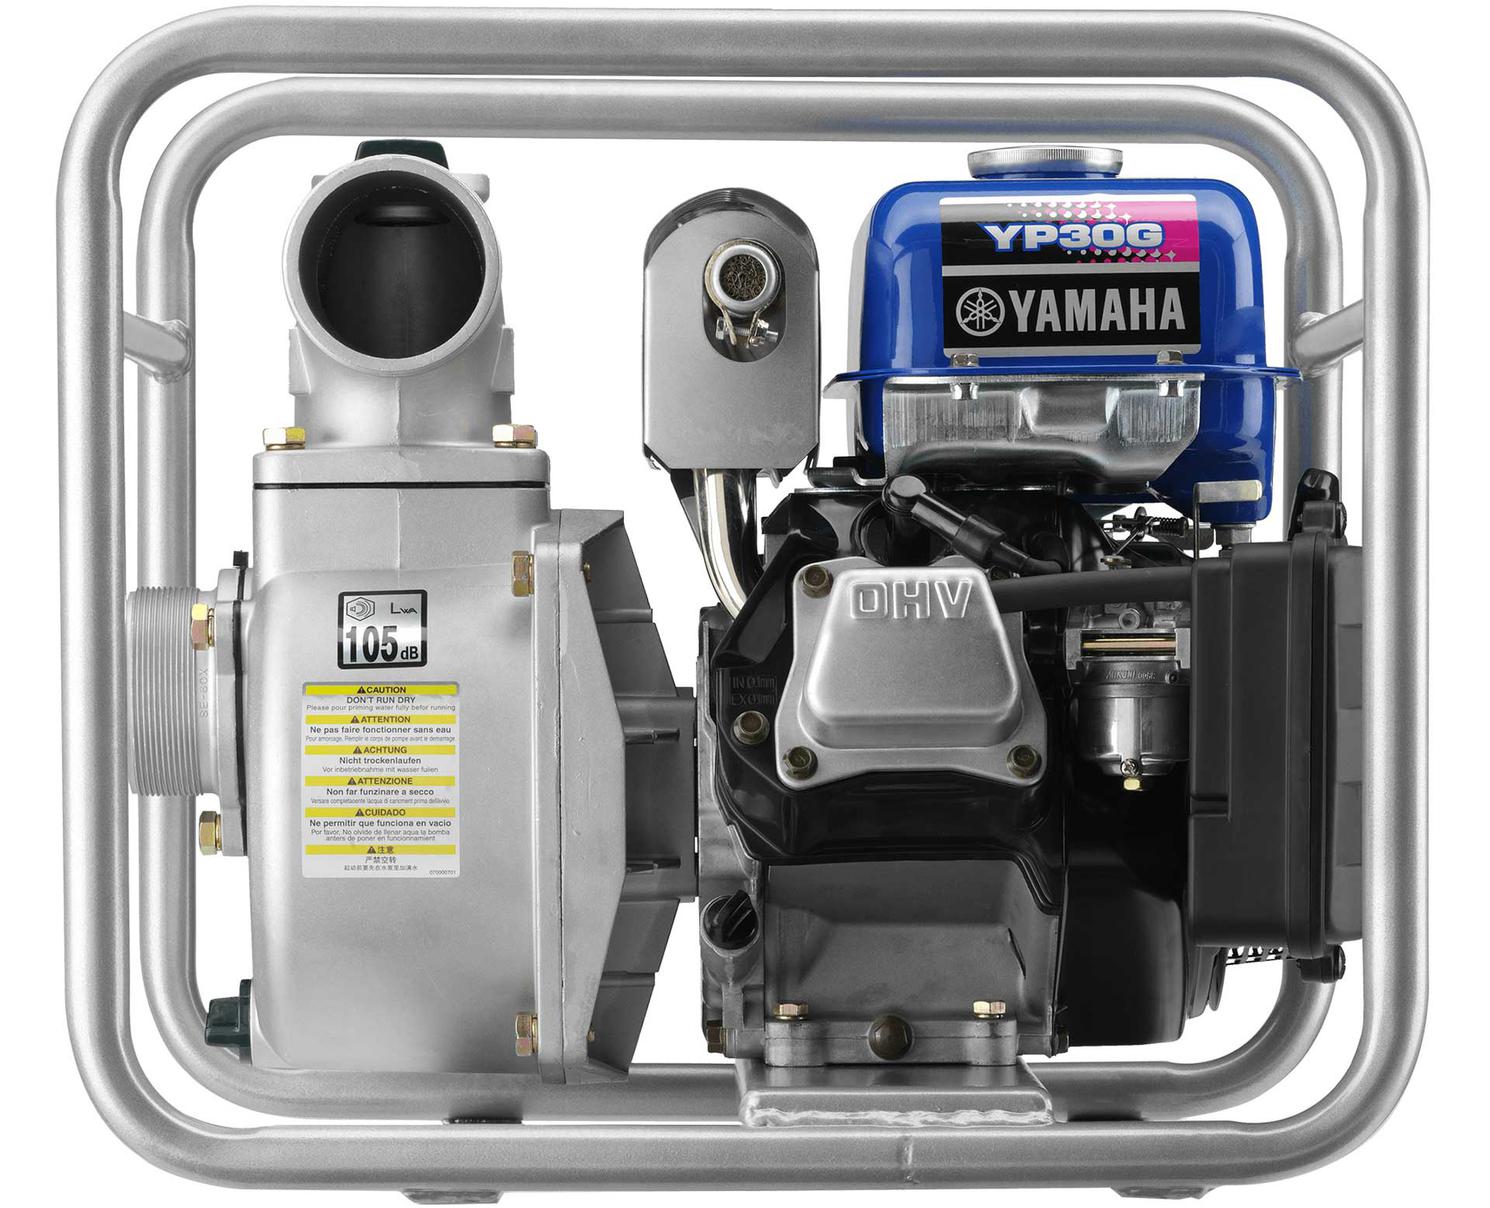  Yamaha Water Pump YP30 (3